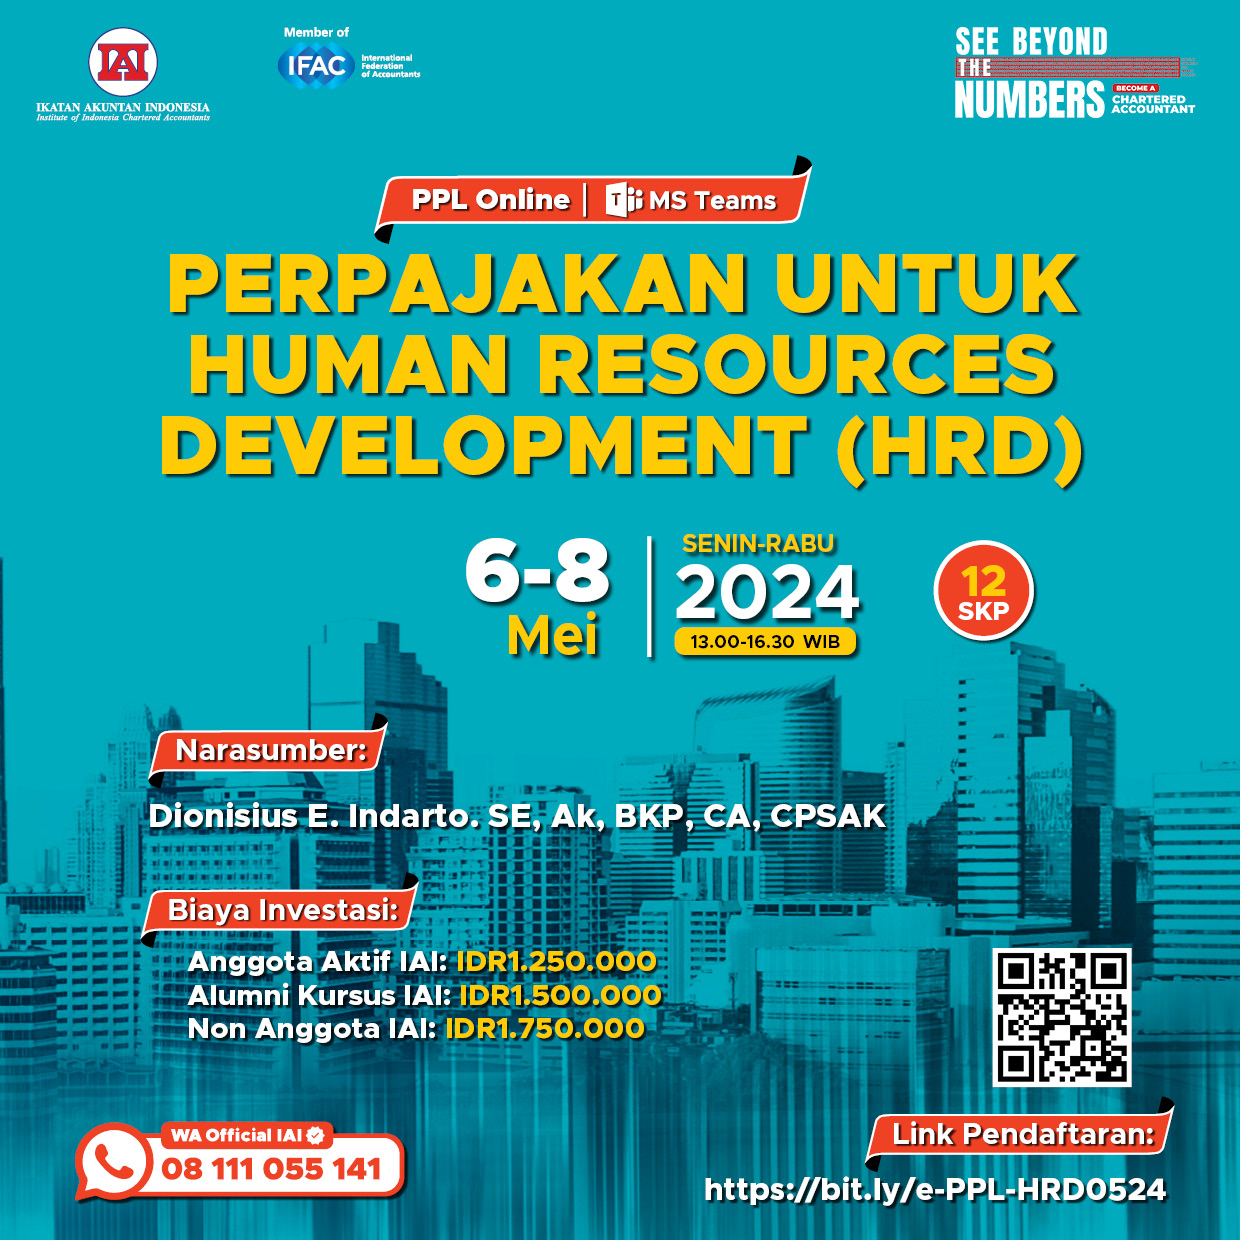 Perpajakan untuk Human Resources Development (HRD)